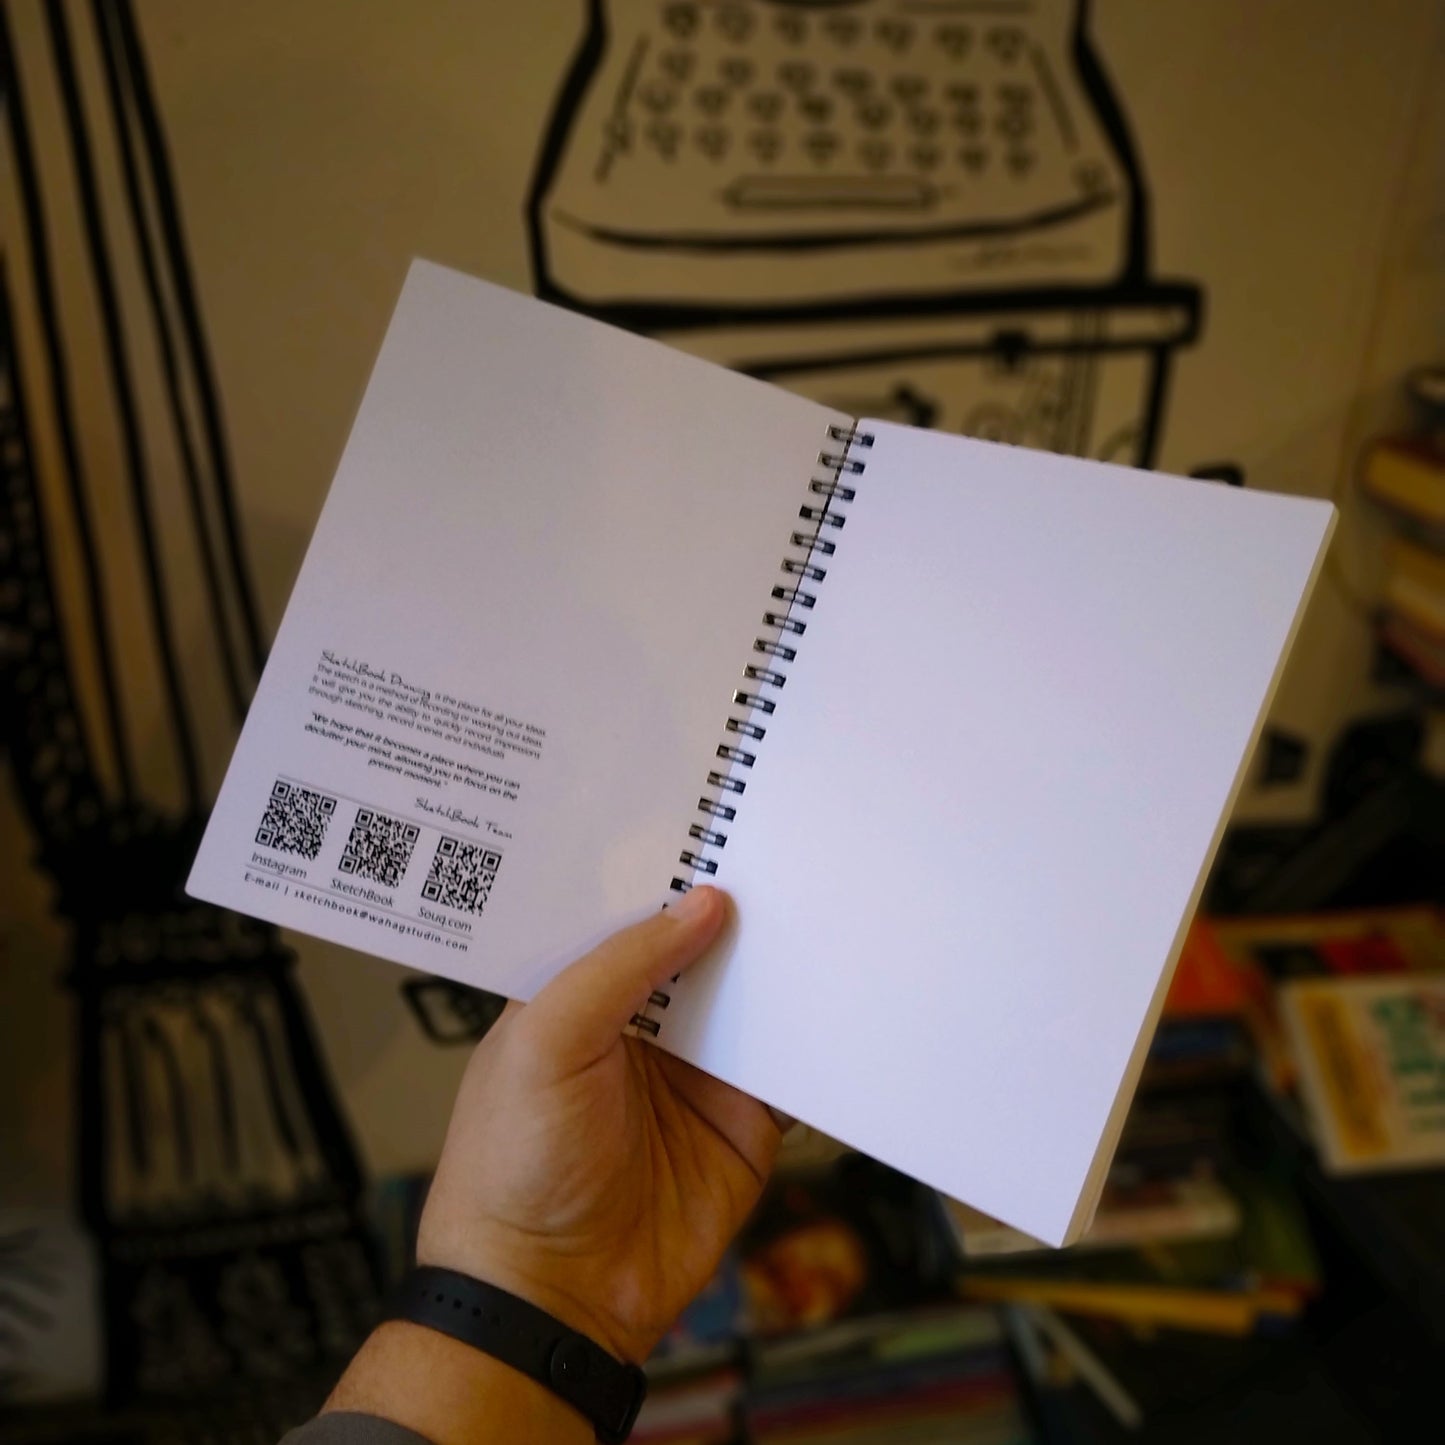 Sketchbook | 20 X 14 cm - (Half Cover) - Pink - from SketchBook Stationery